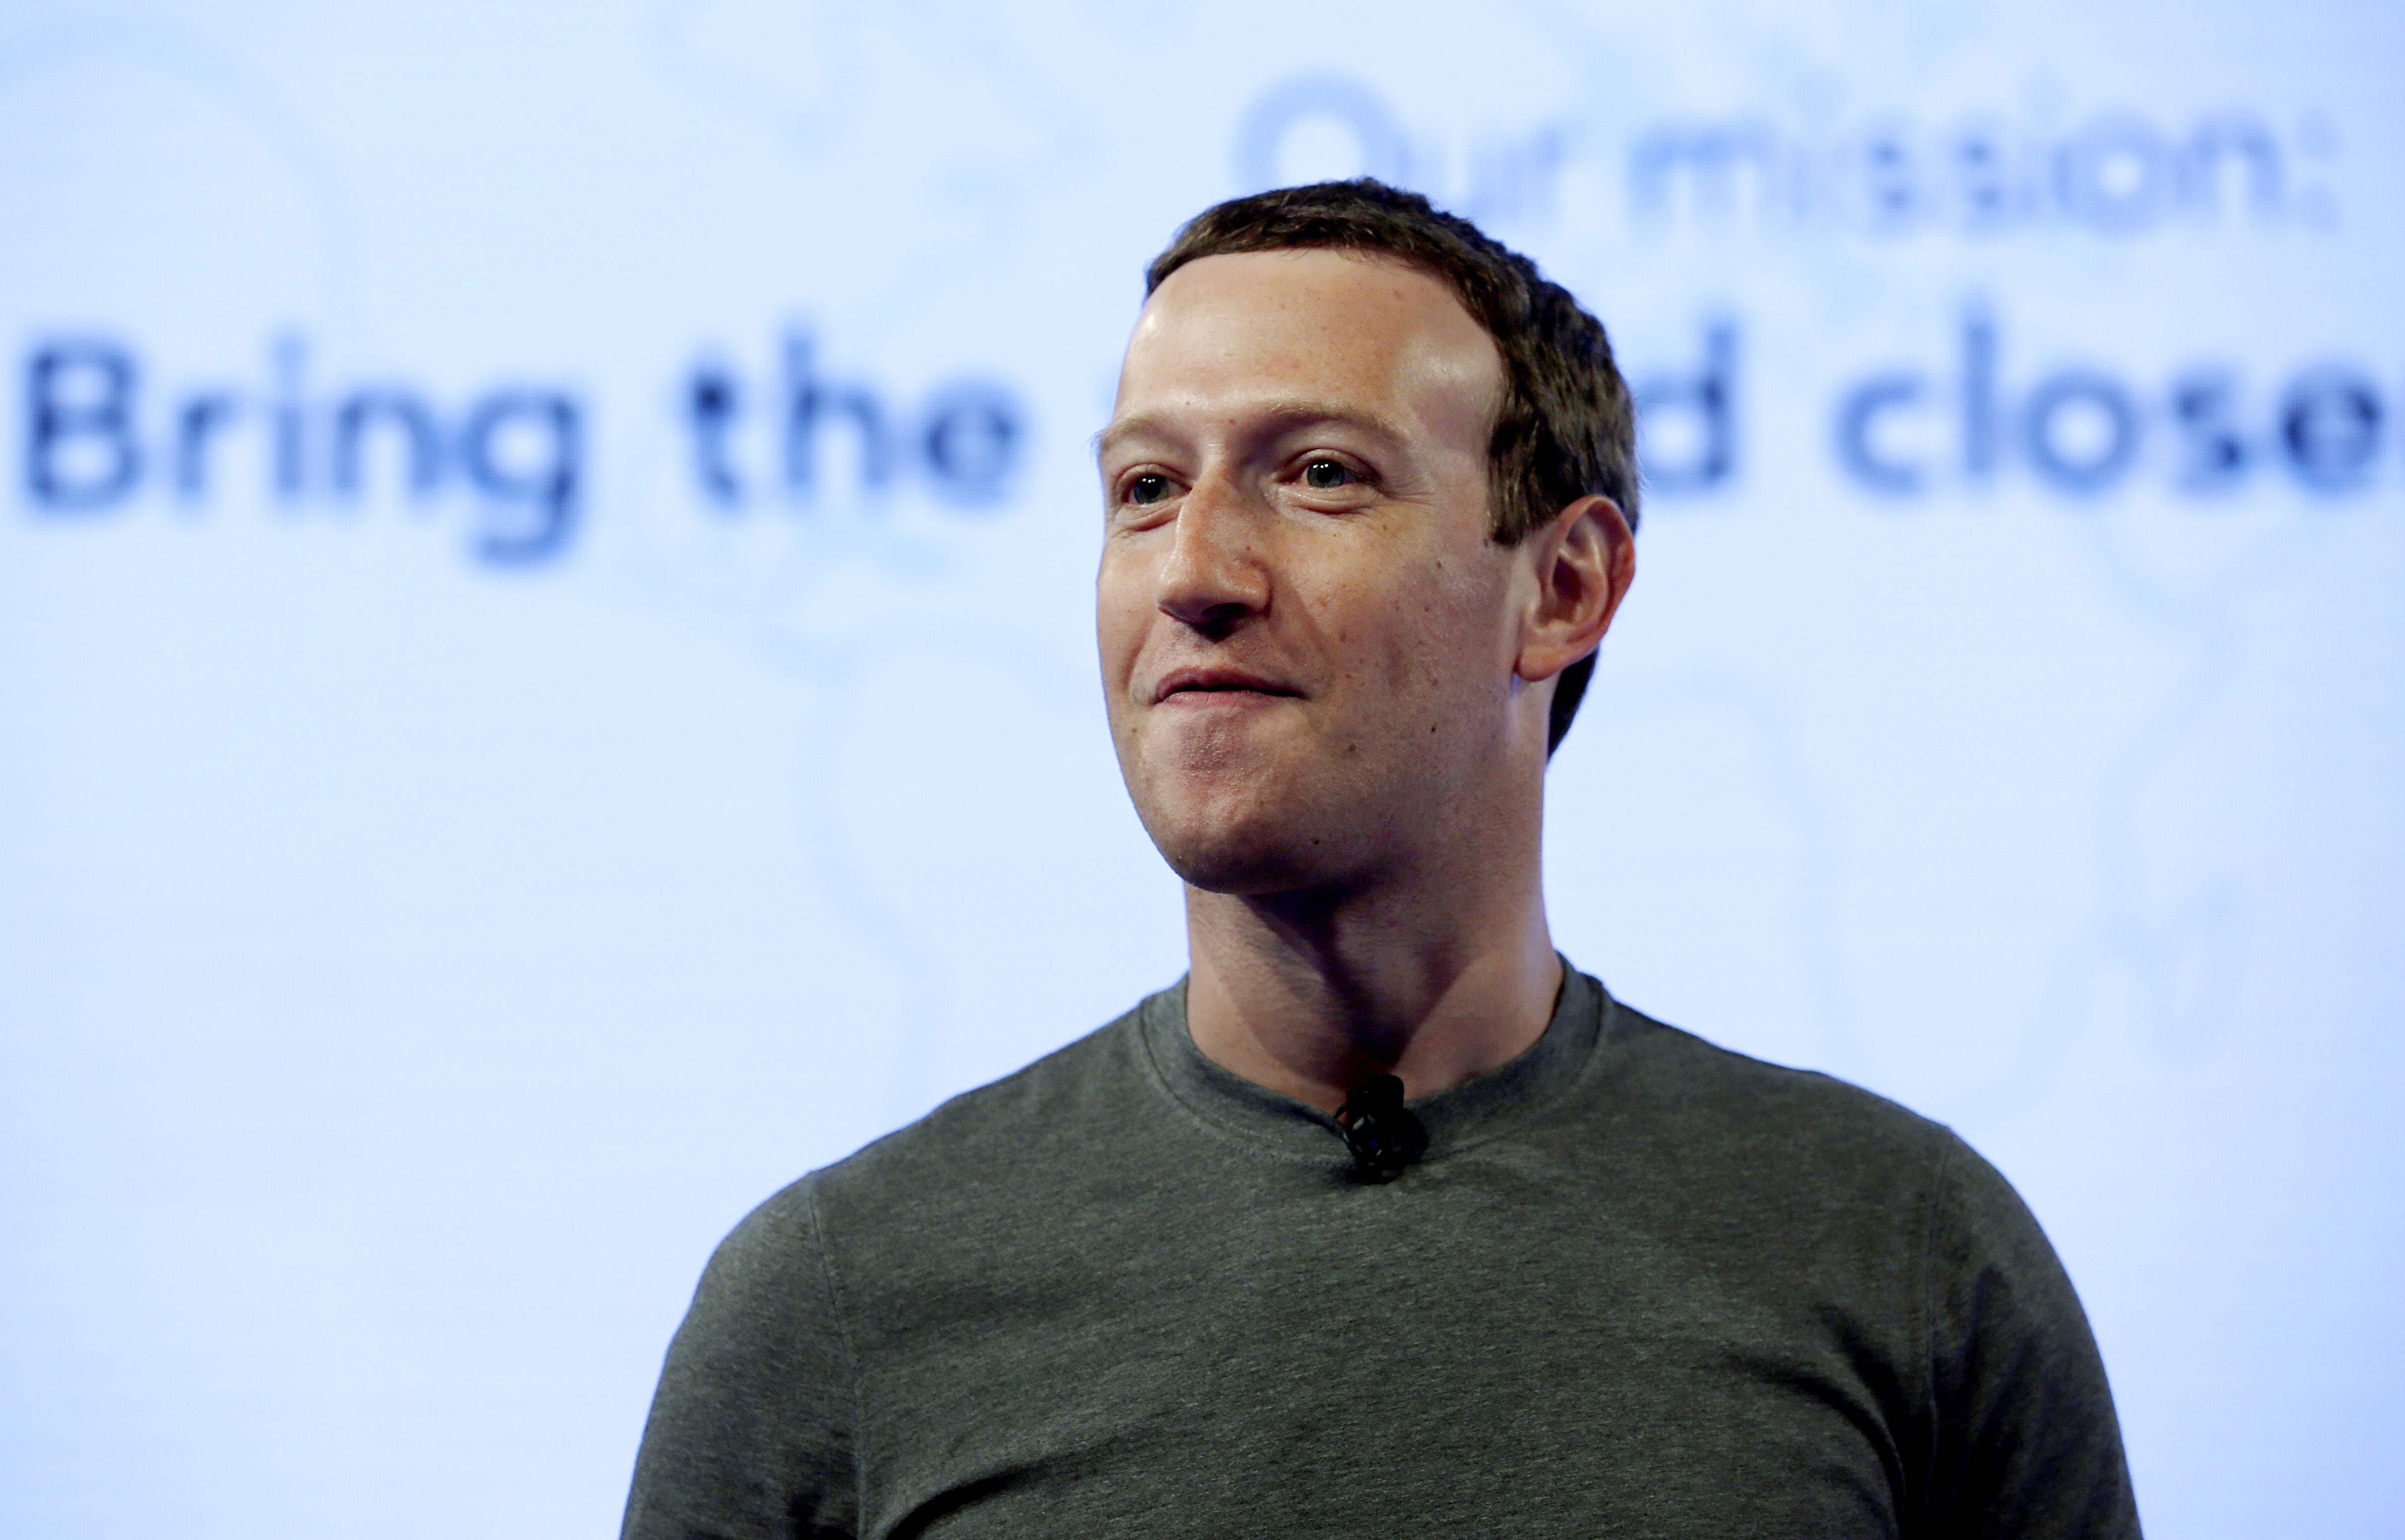 Londres dice que la respuesta de Zuckerberg sobre Facebook es insuficiente